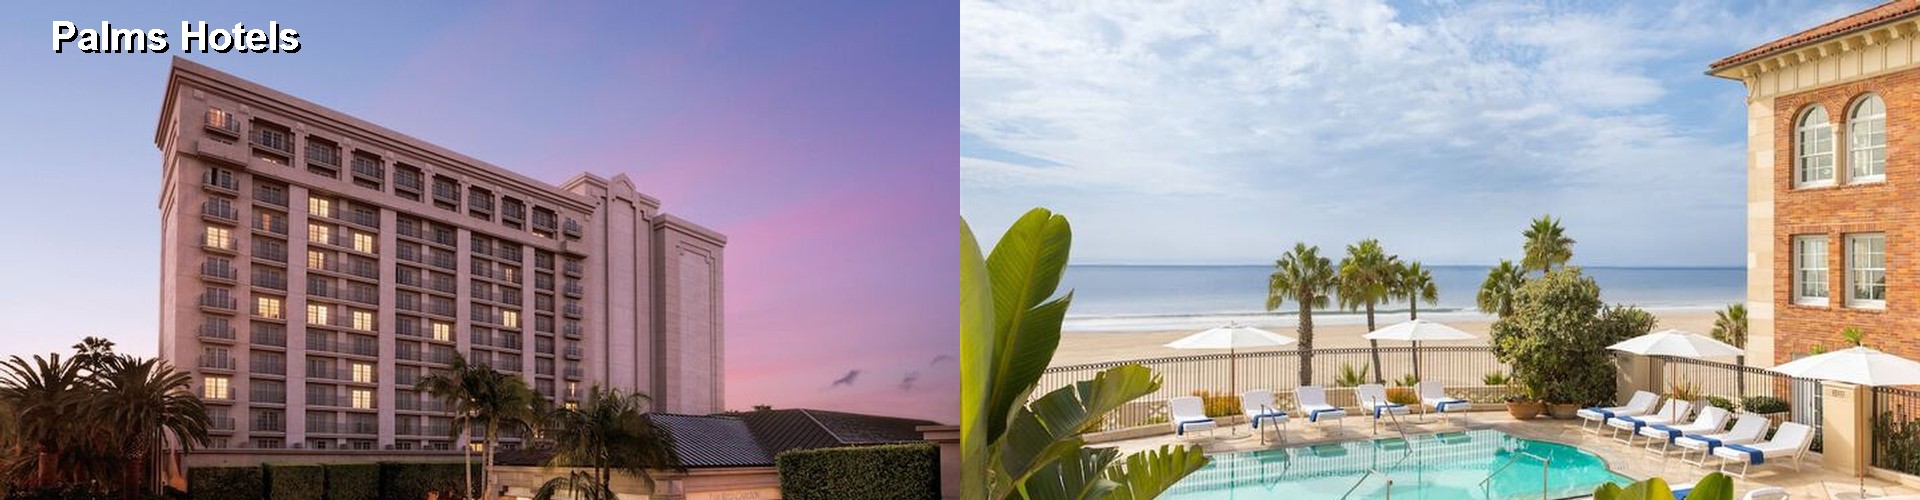 5 Best Hotels near Palms